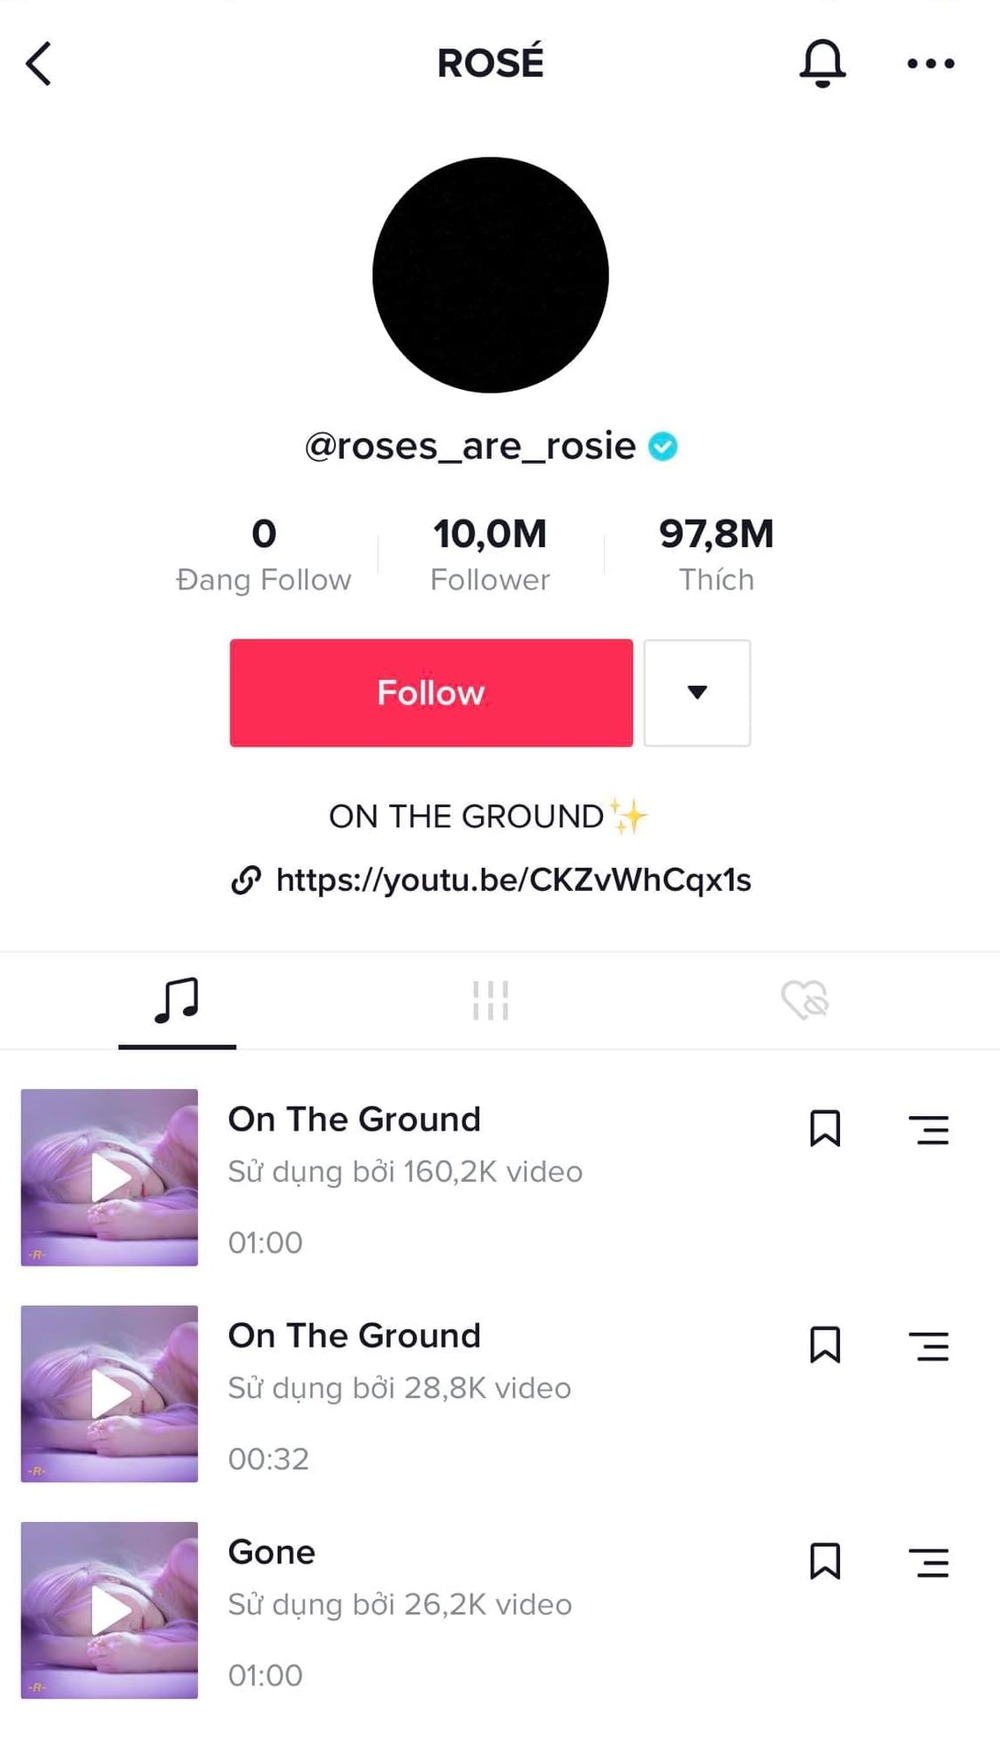  
Tài khoản TikTok của Rosé đã cán mốc 10 triệu lượt theo dõi. (Ảnh: Chụp màn hình)